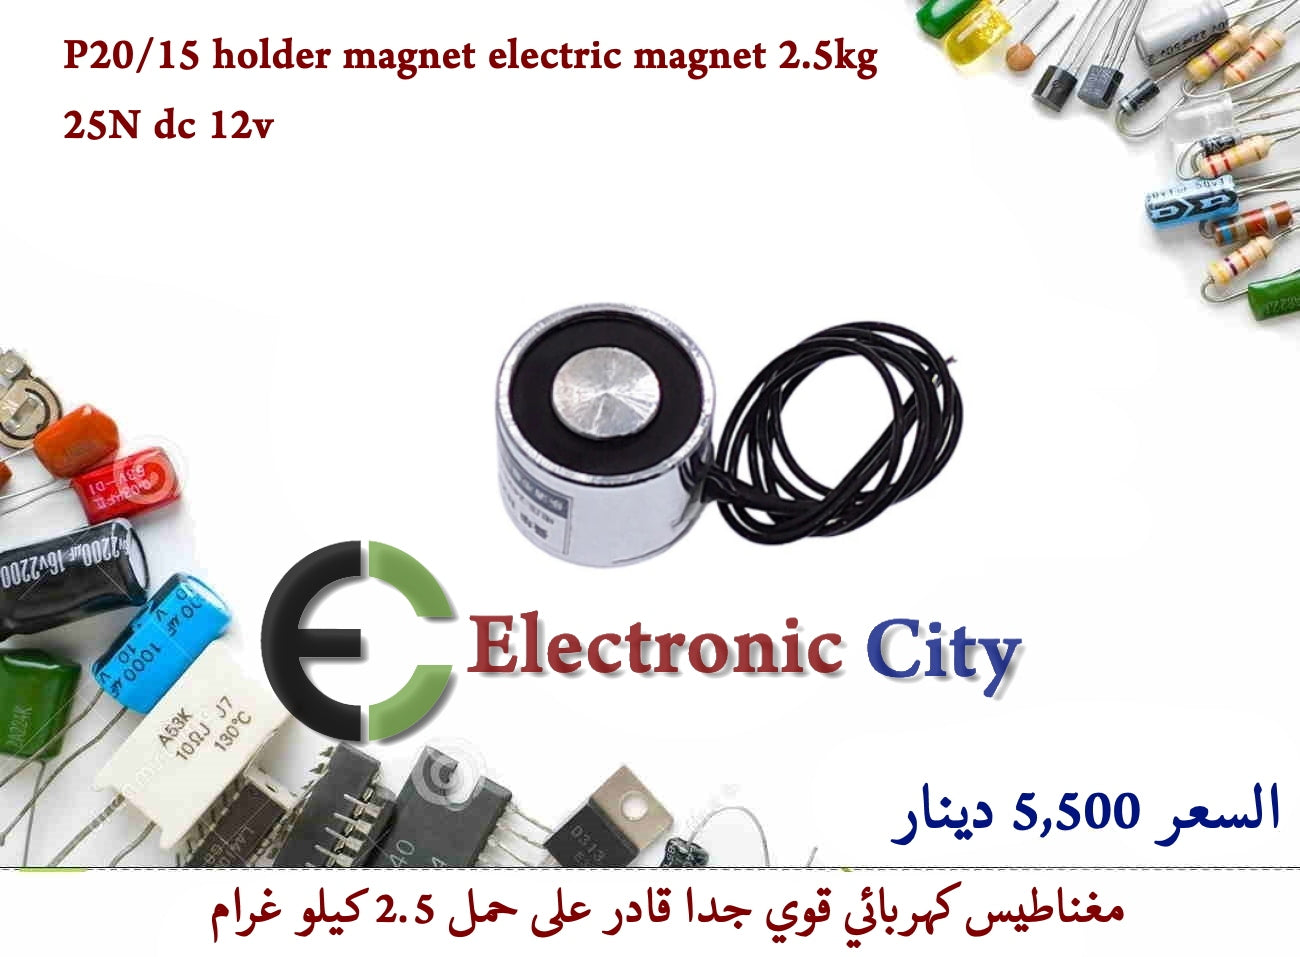 P20-15 holder magnet electric magnet 2.5kg lift 25N dc 12v  #R3 n Y-JM0021A